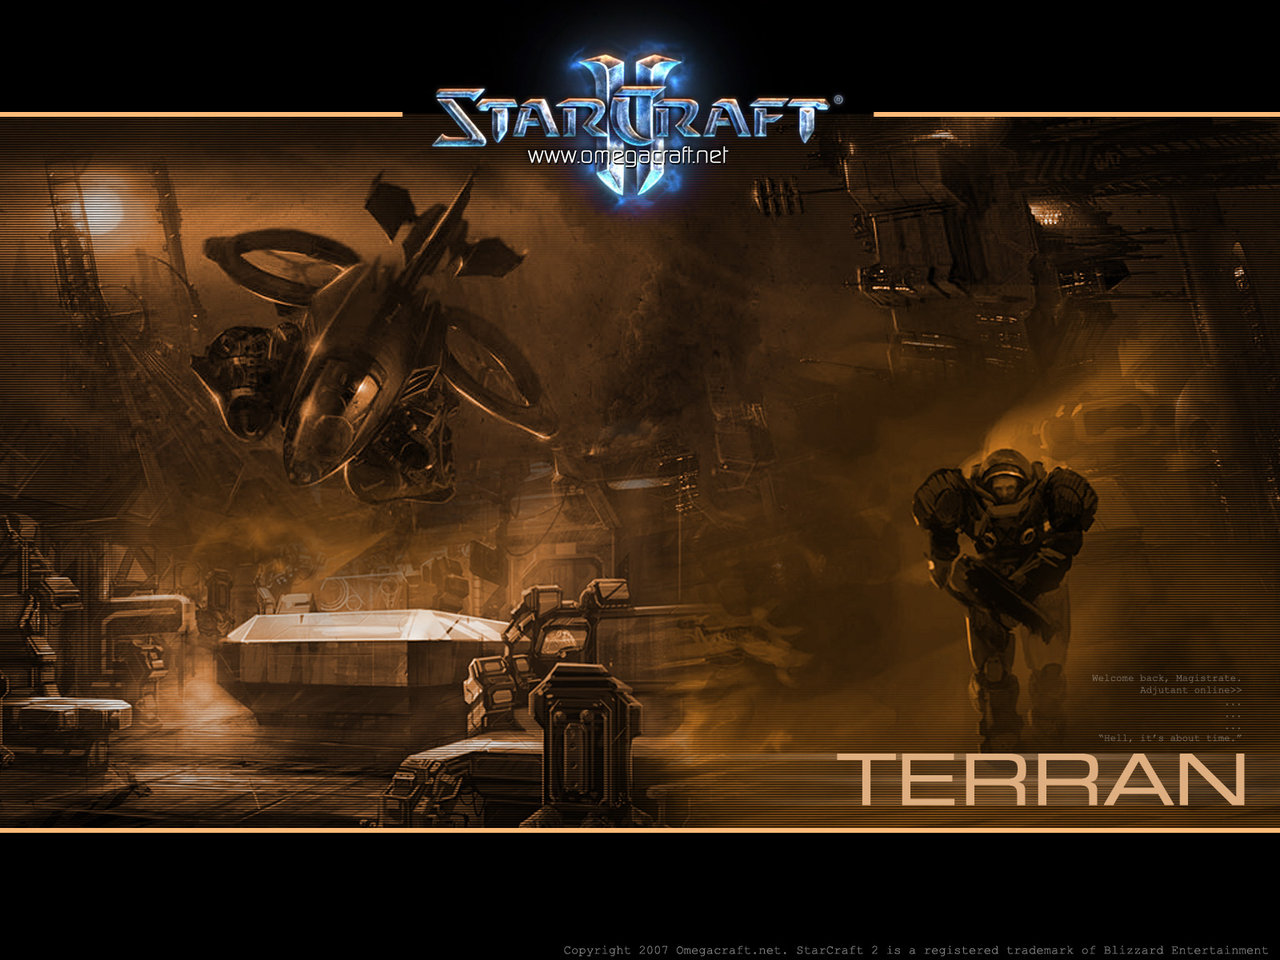  Wallpapers de StarCraft 2 Fondos de escritorio de StarCraft 2